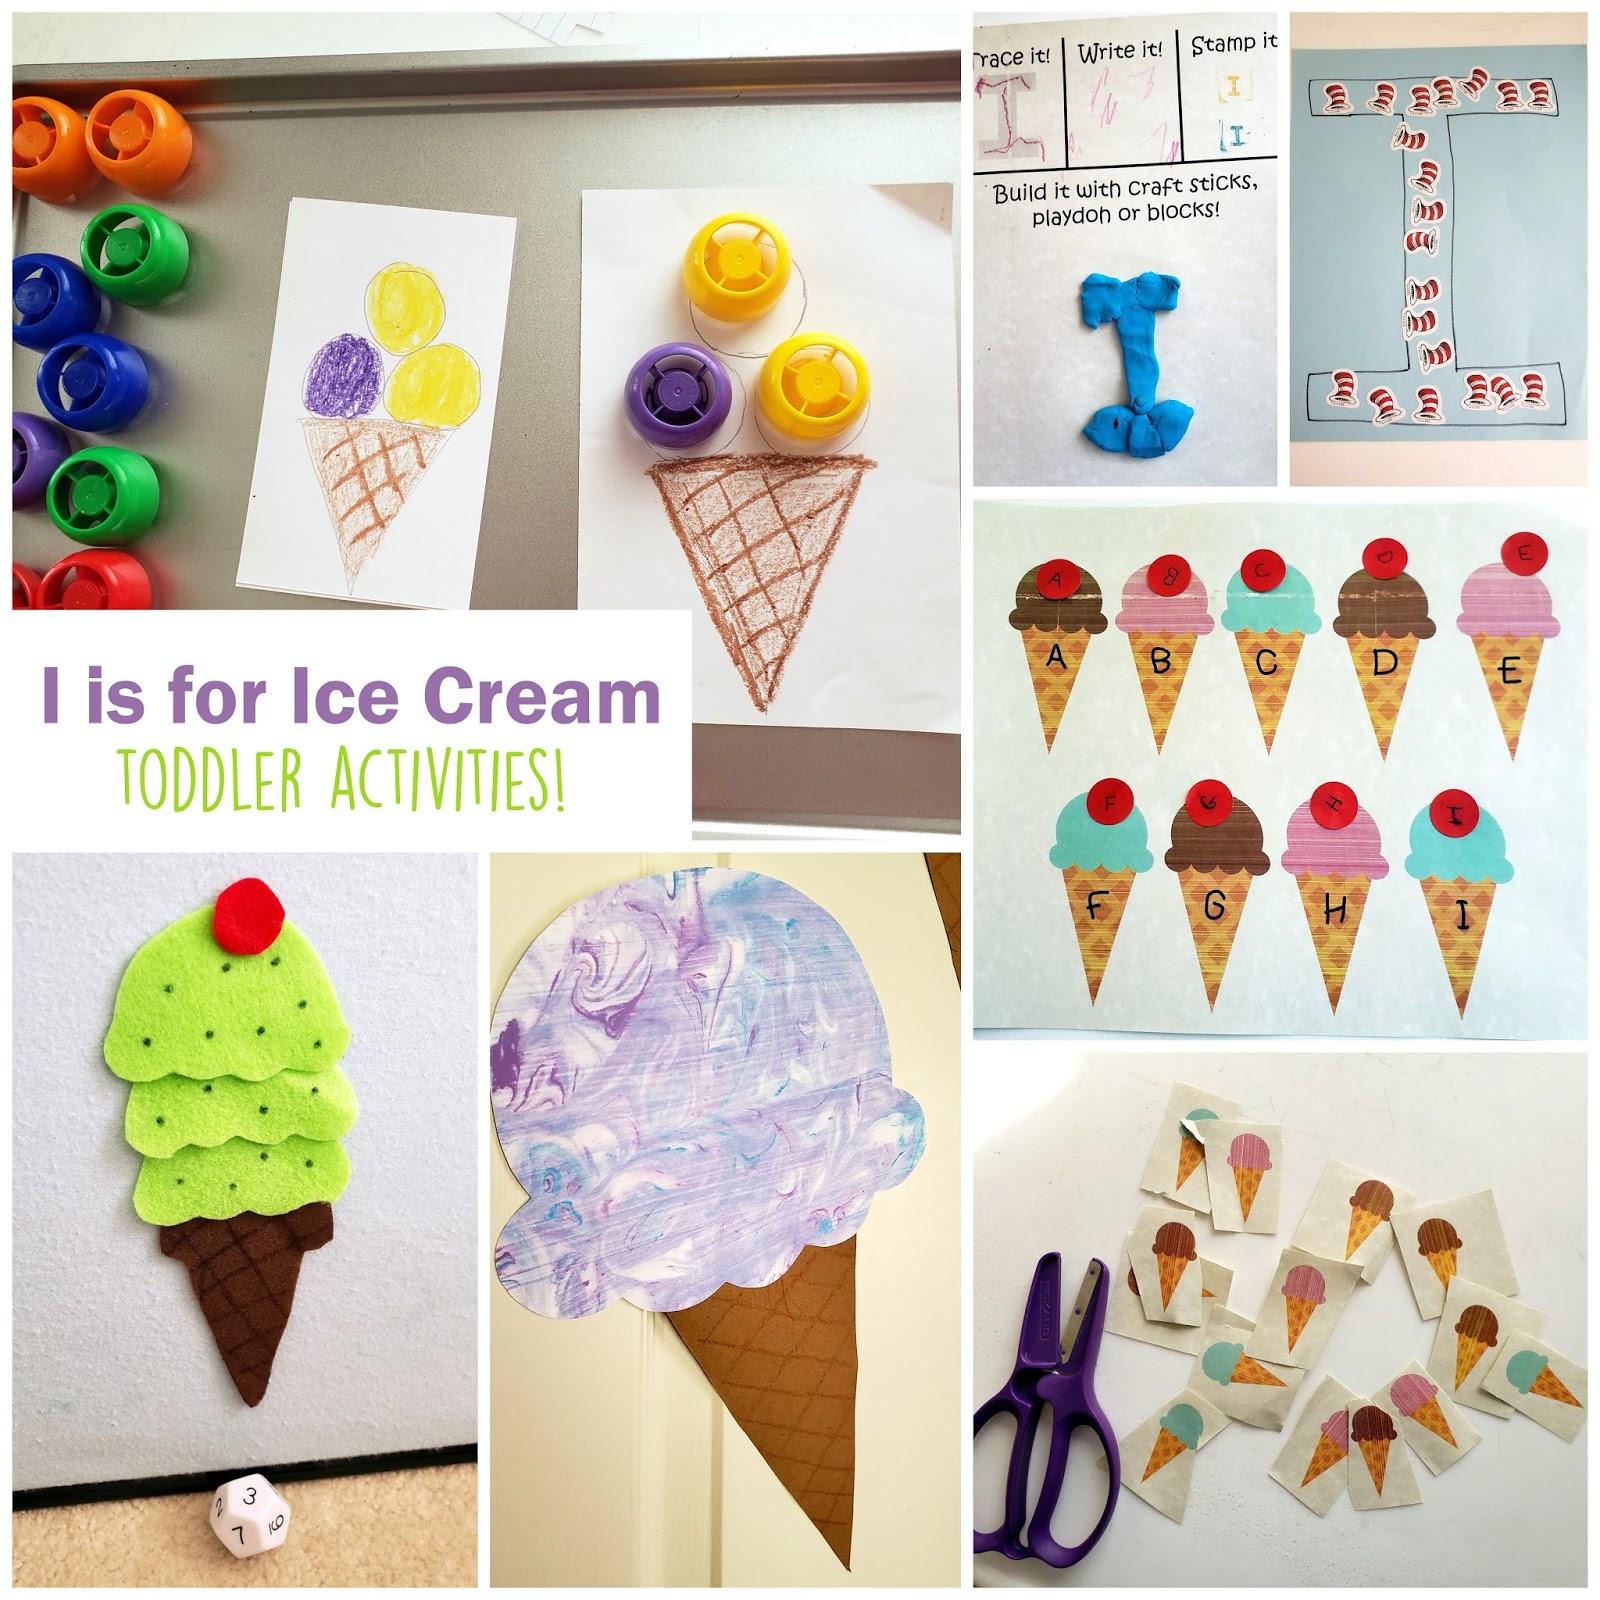 Ice Cream Activities for Preschool Kids - The Activity Mom